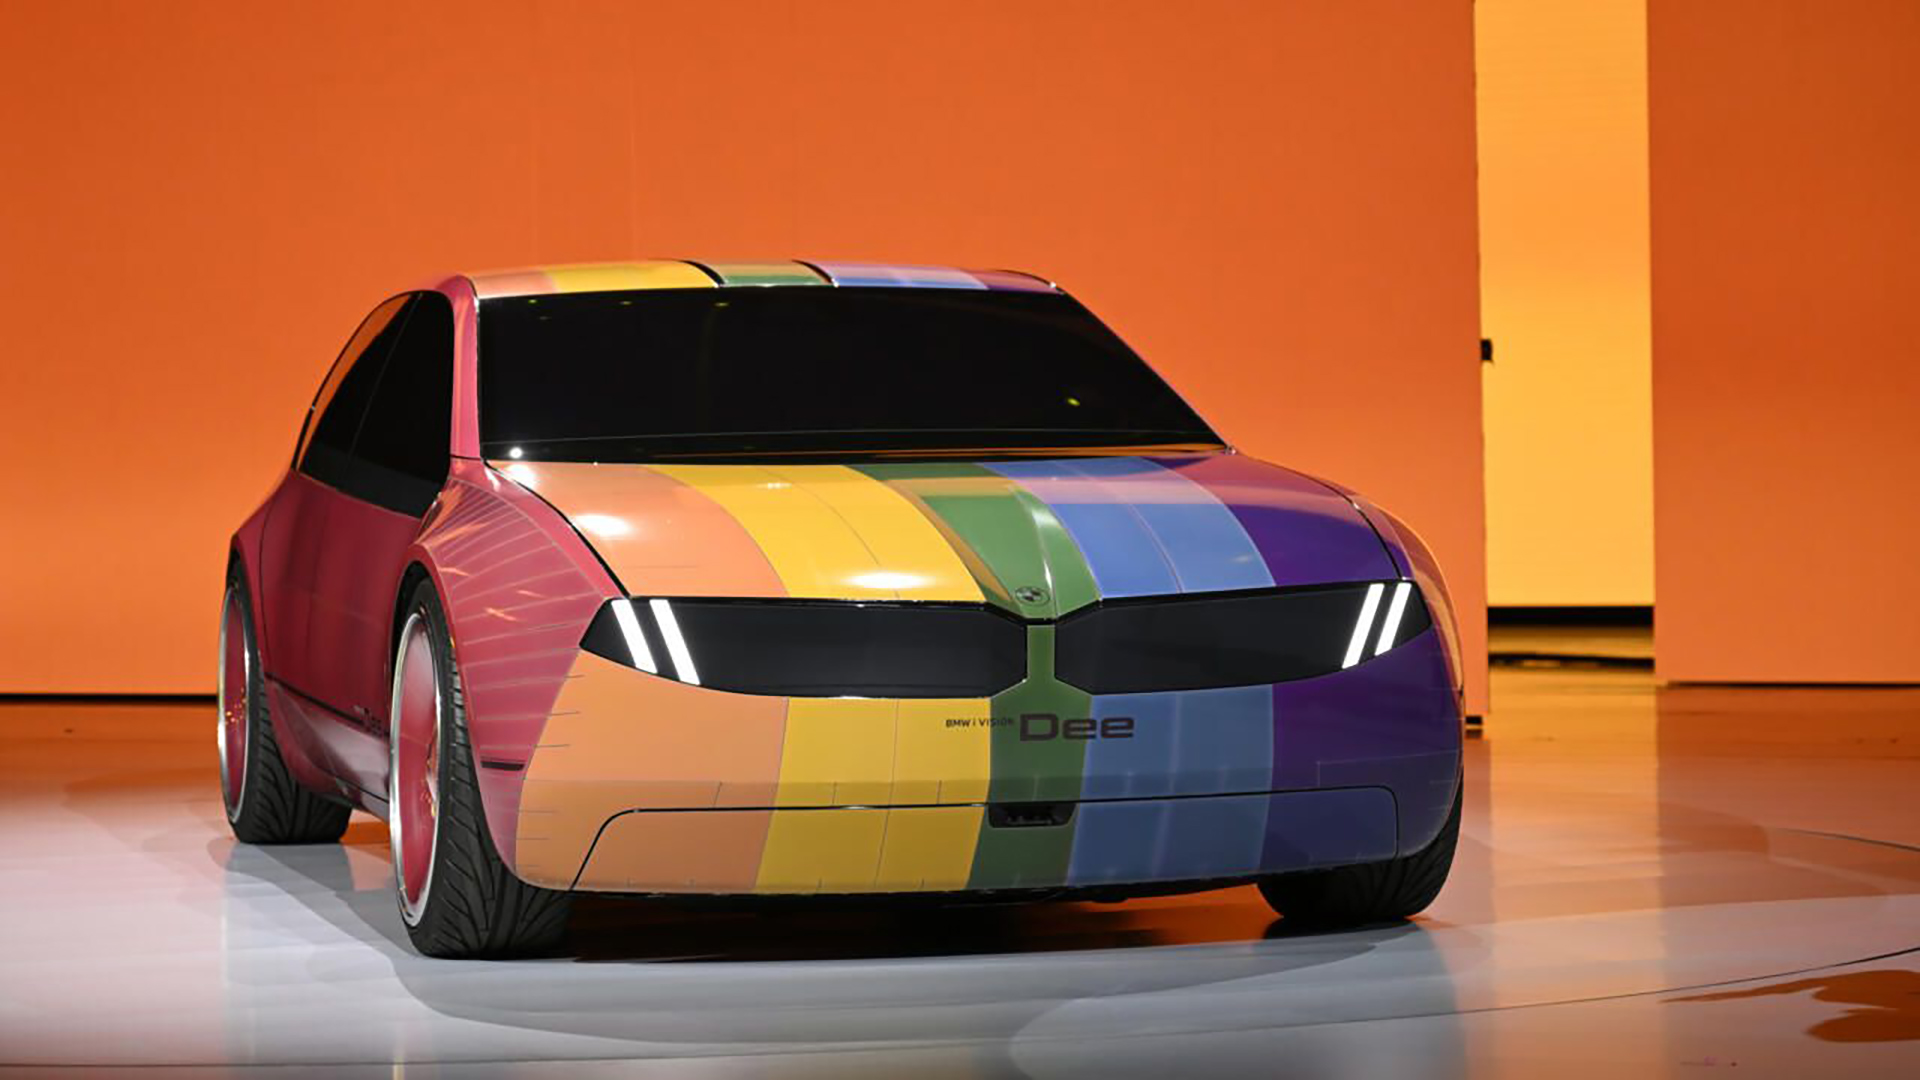 Gracias al sistema E ink, el nuevo auto puede combinar hasta 32 colores electónicamente de acuerdo al patrón que desee su usuario